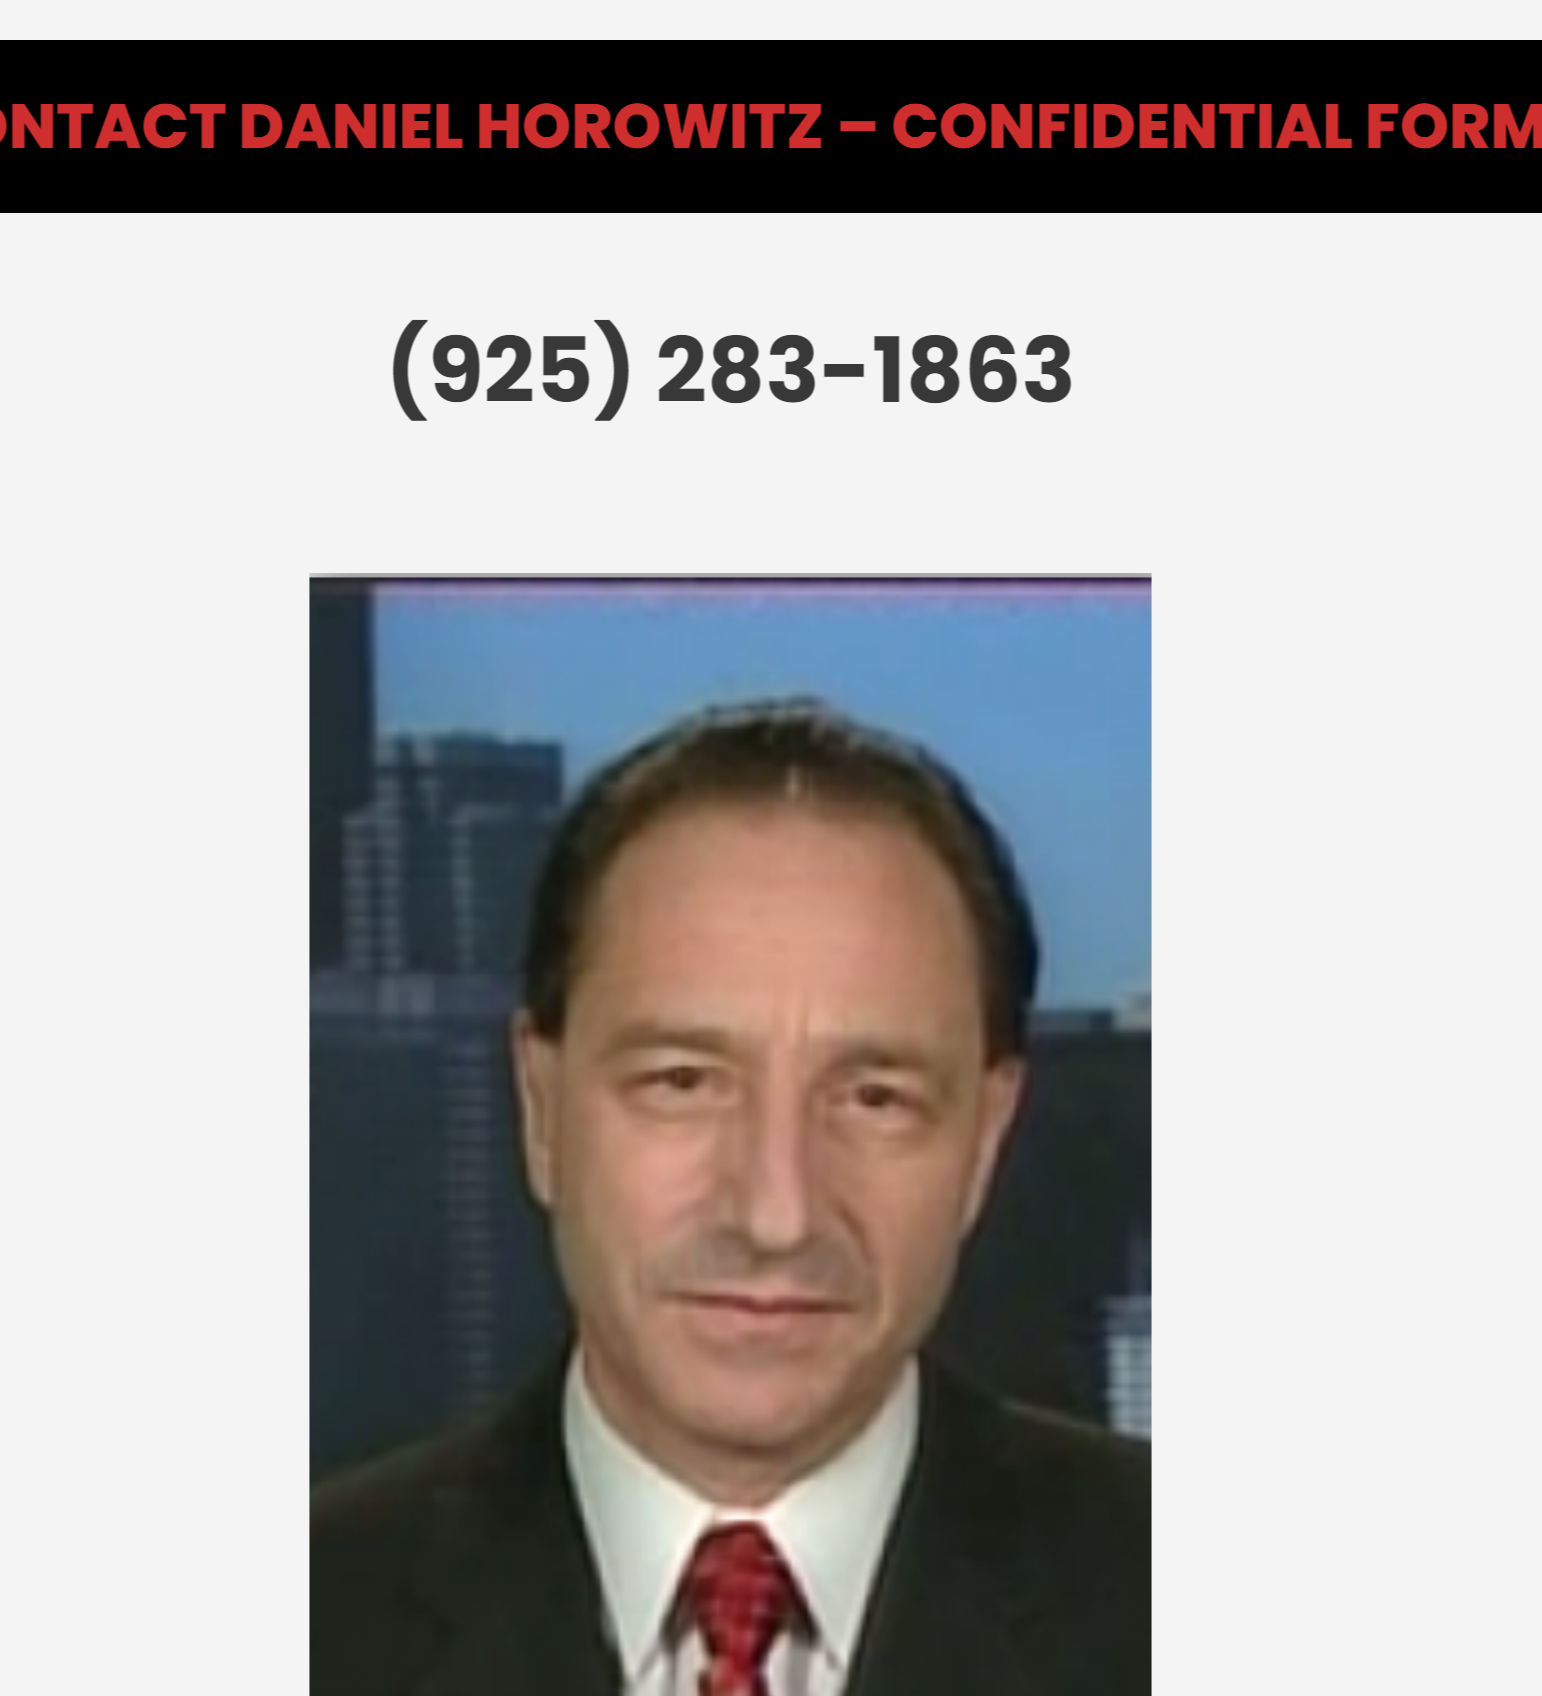 Daniel Horowitz's Profile Image